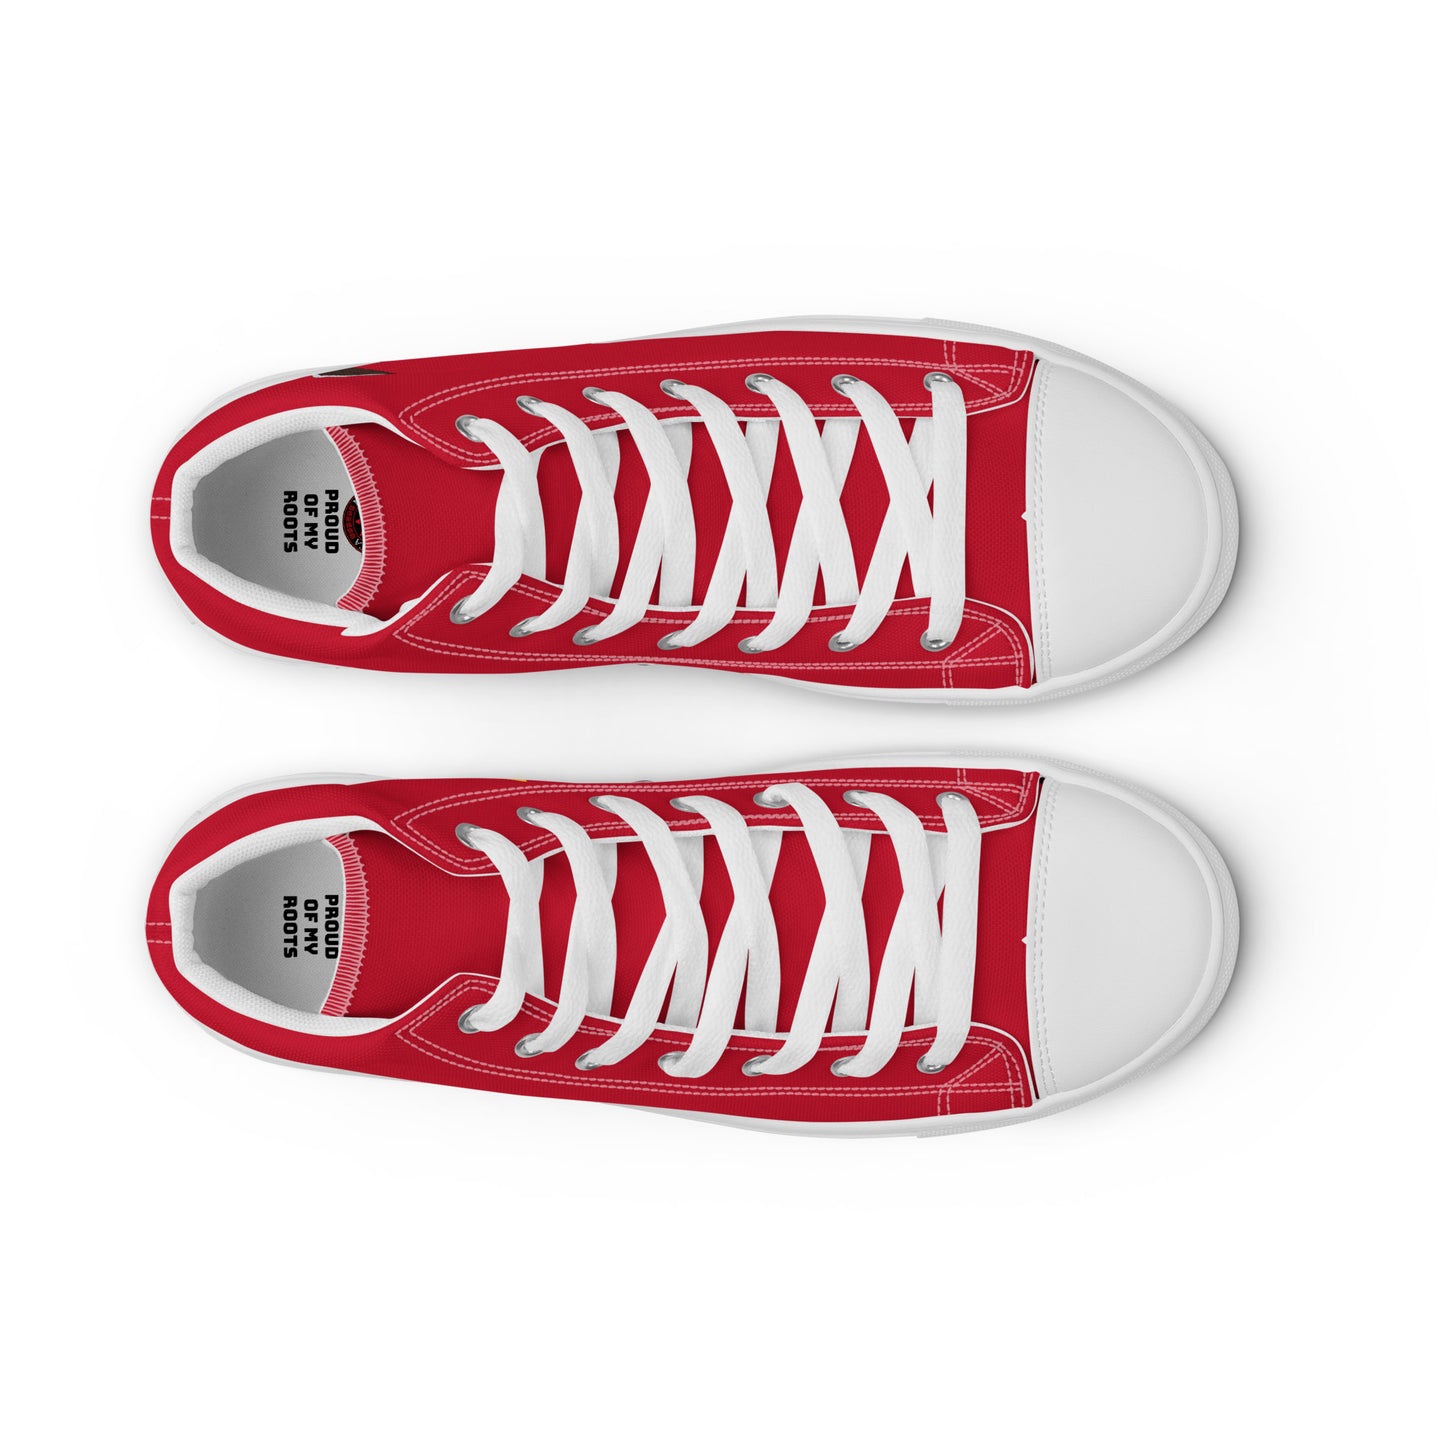 Ecuador - Men - Red - High top shoes